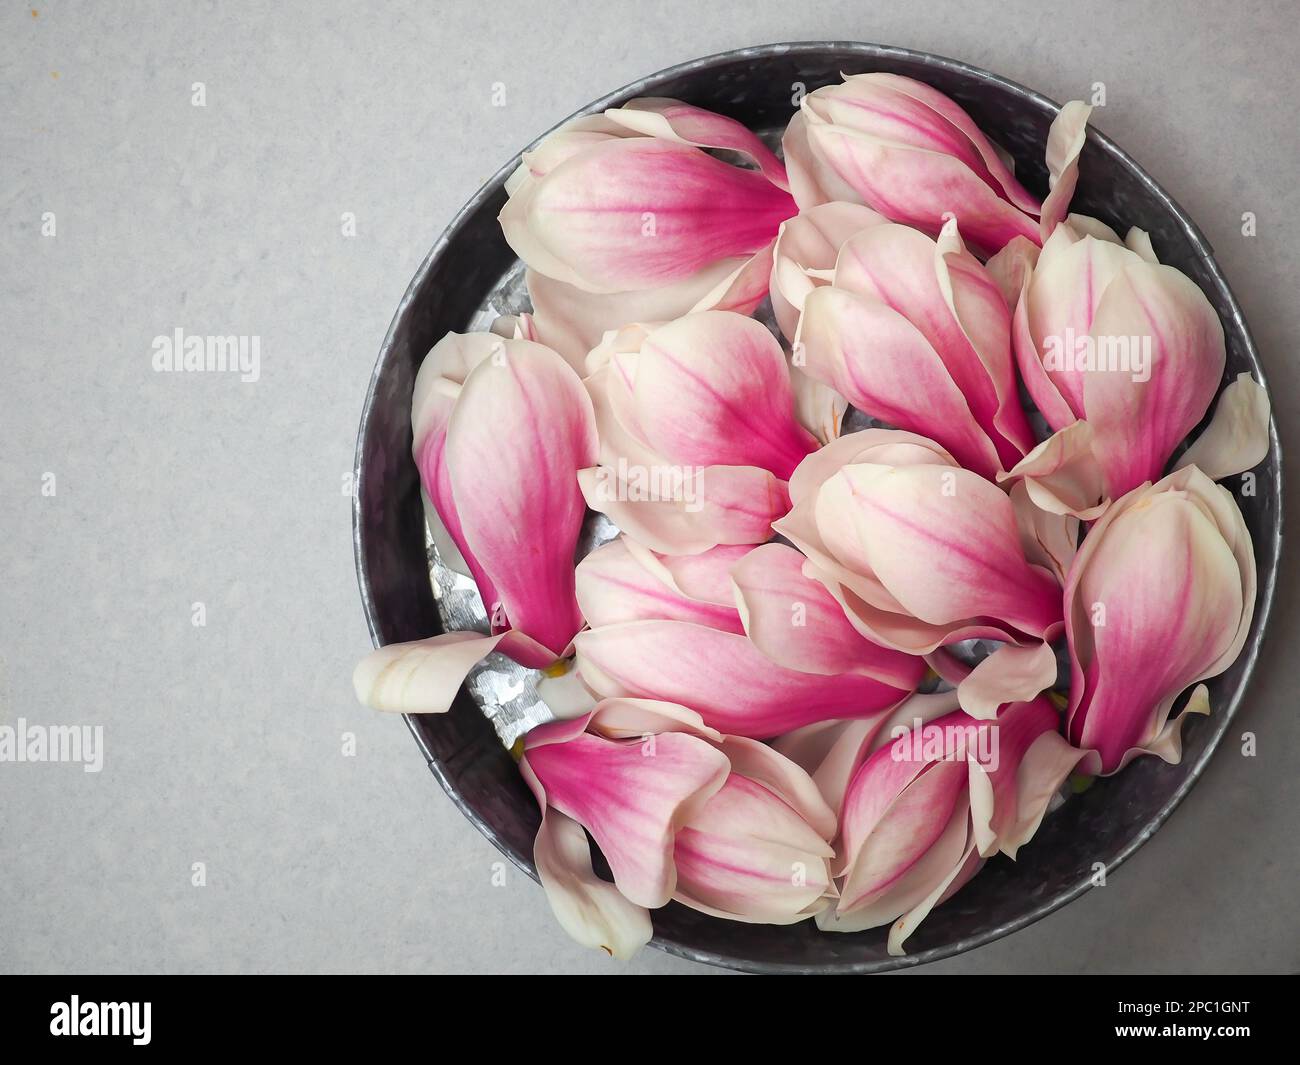 Pflücken Sie pinkfarbene essbare Magnolienblüten, die Sie einsammeln oder zu Sirup machen können, in einer rustikalen Küchenpfanne, die von oben mit einem Kopierbereich aufgenommen wurde Stockfoto